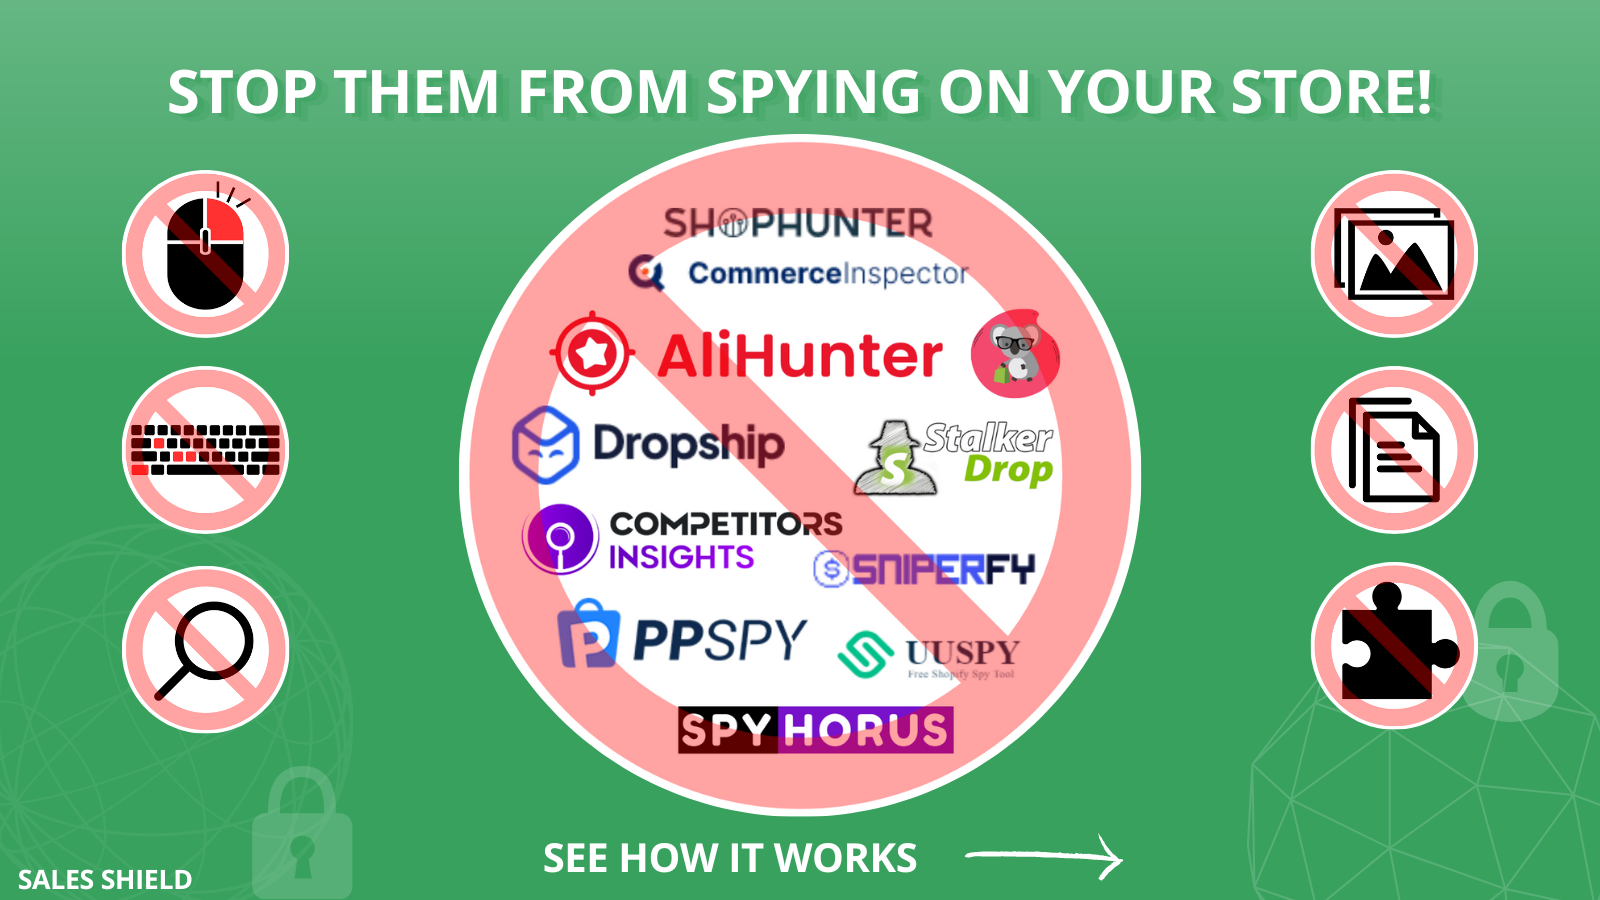 阻止他们对您的商店进行间谍活动！Shophunter，ppspy，uuspy